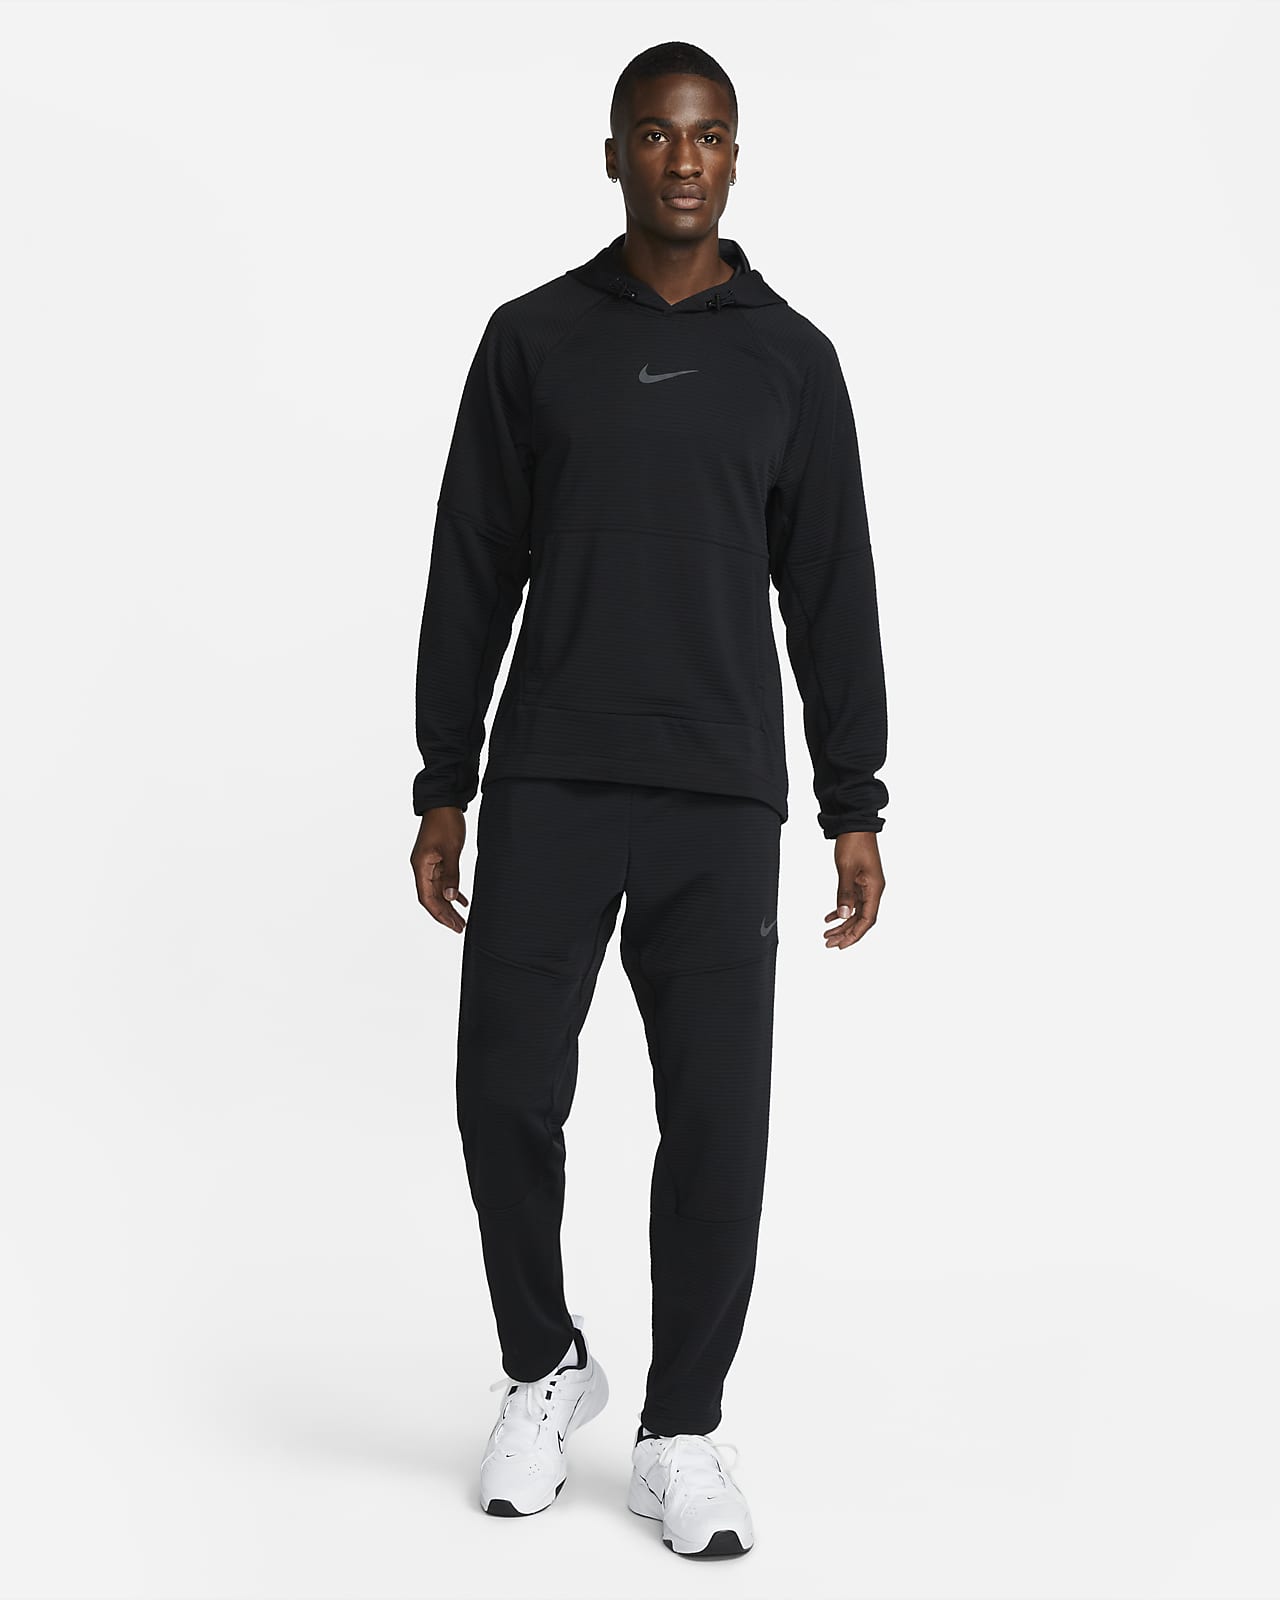 Men's Nike Pro Dri-FIT Clothing. Nike CA